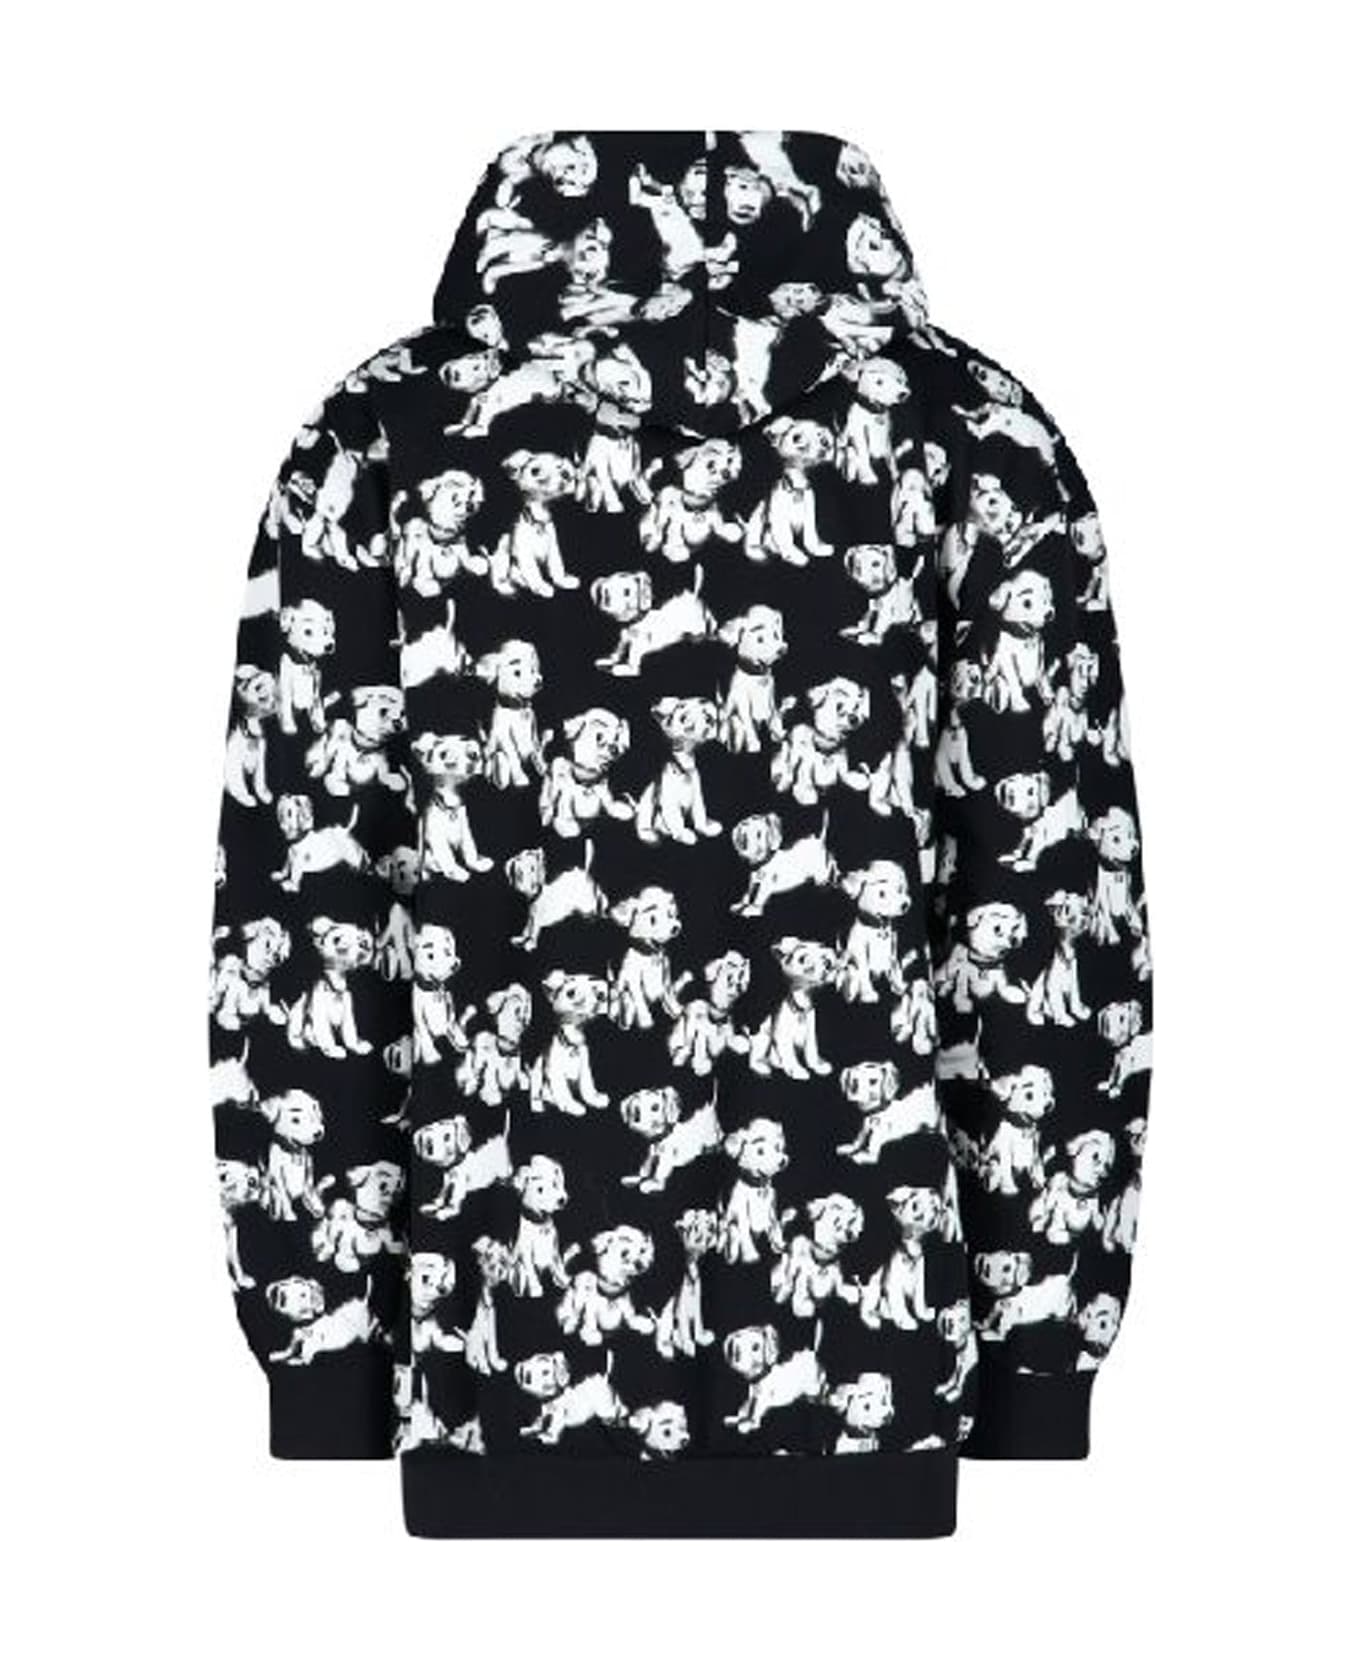 Celine Hooded Printed Dogs Sweatshirt - Black